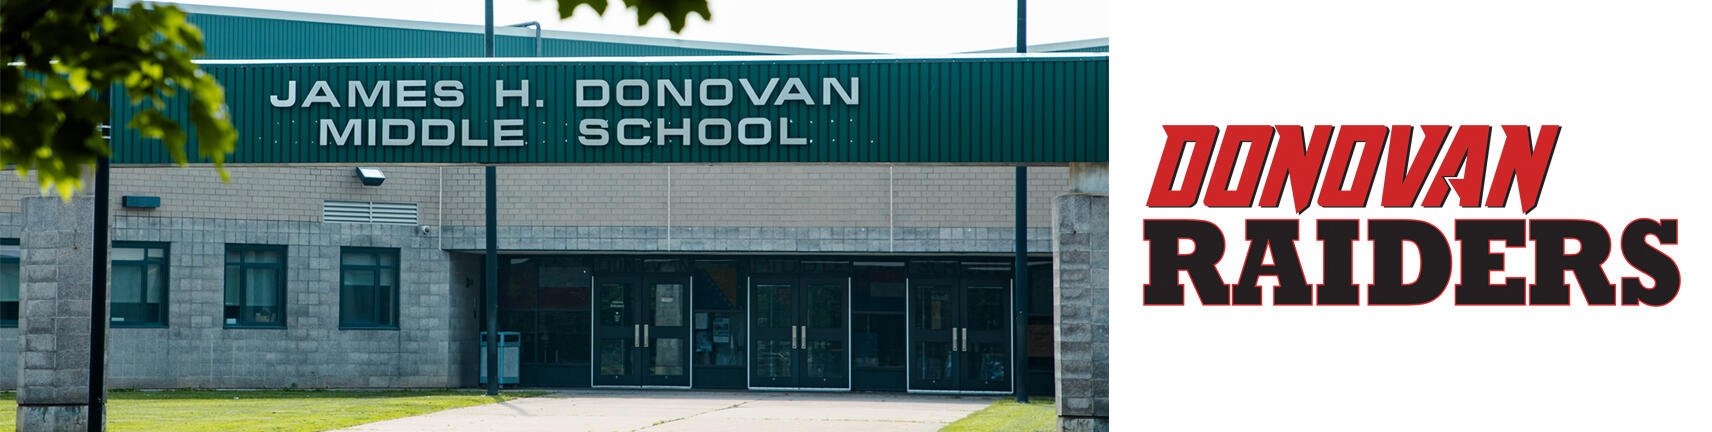 多諾萬學校建築和多諾萬突襲者標誌的圖片